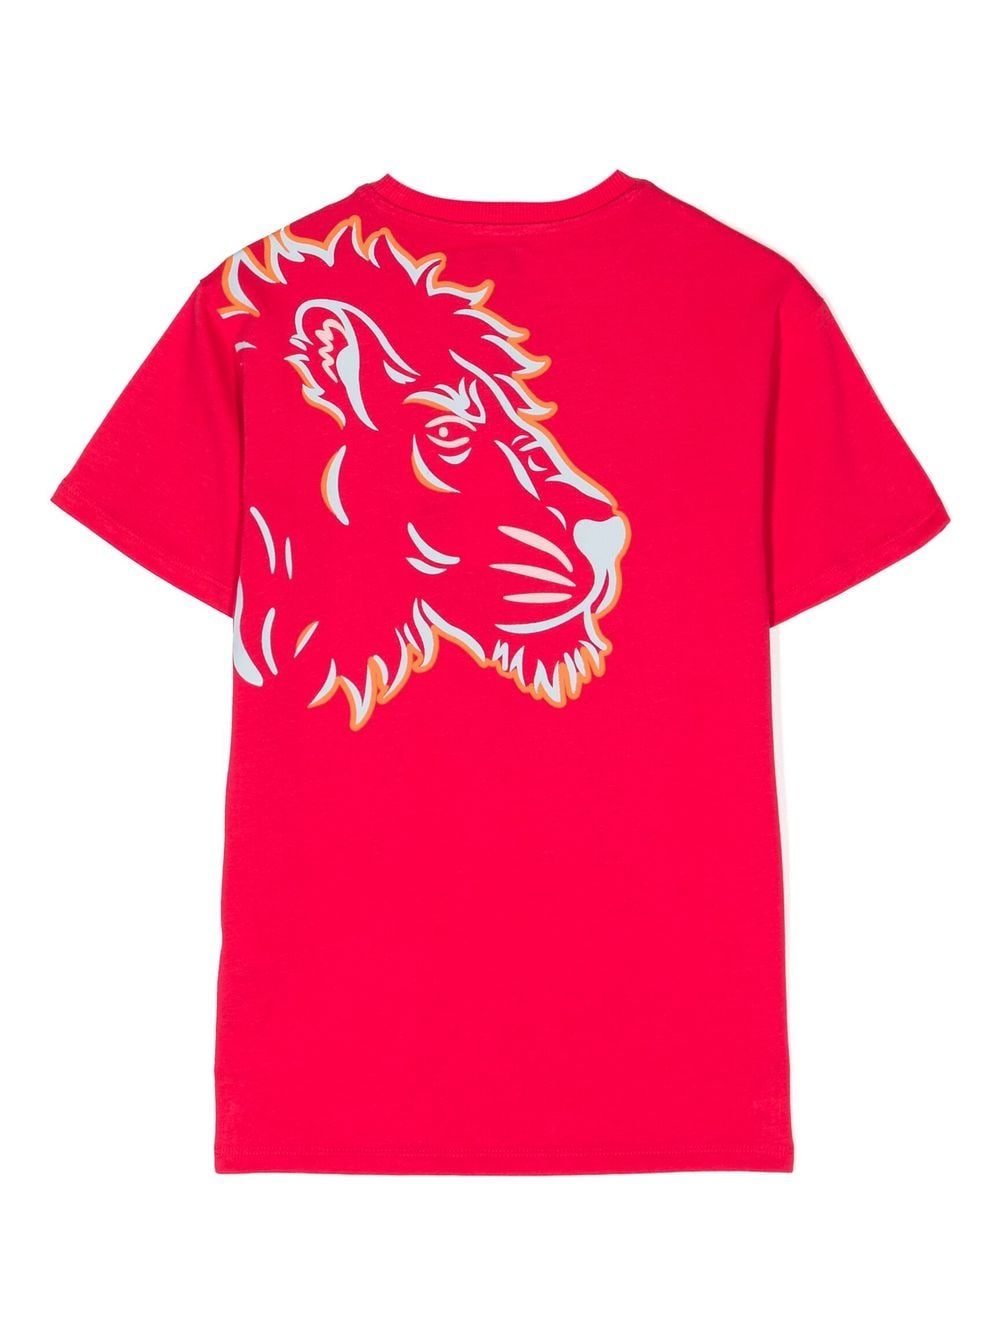 Kenzo Kids T-shirt met leeuwenkop - Roze